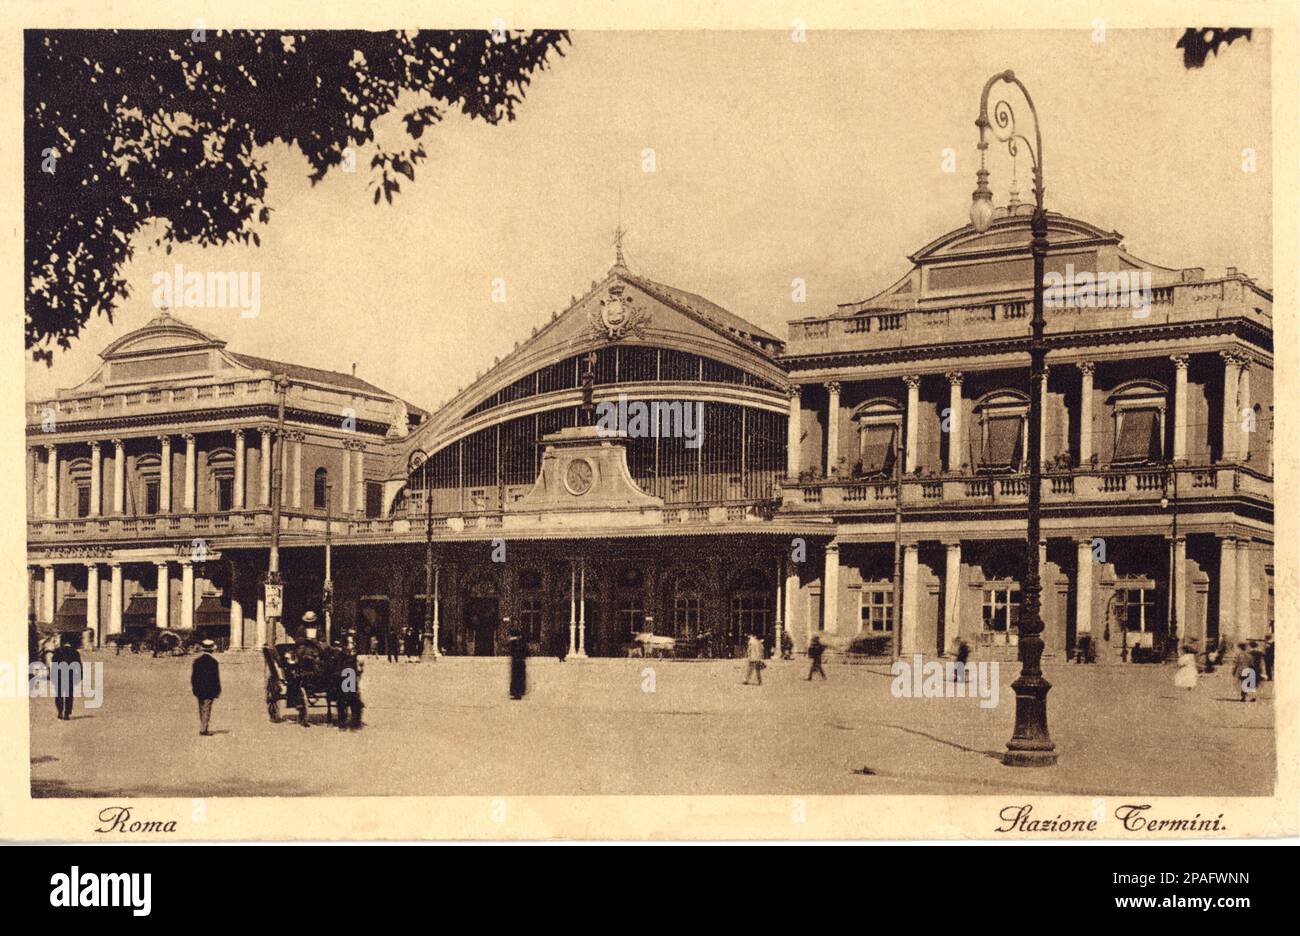 1910 CA , ROMA, ITALIE : la GARE TERMINI - TRAM - TRENO - FS - FERROVIE - stazione ferroviaria - Architettura - architecture - ITALIA - FOTO STORICHE - HISTOIRE - GEOGRAFIA - GÉOGRAPHIE - ROME - ---- ARCHIVIO GBB Banque D'Images